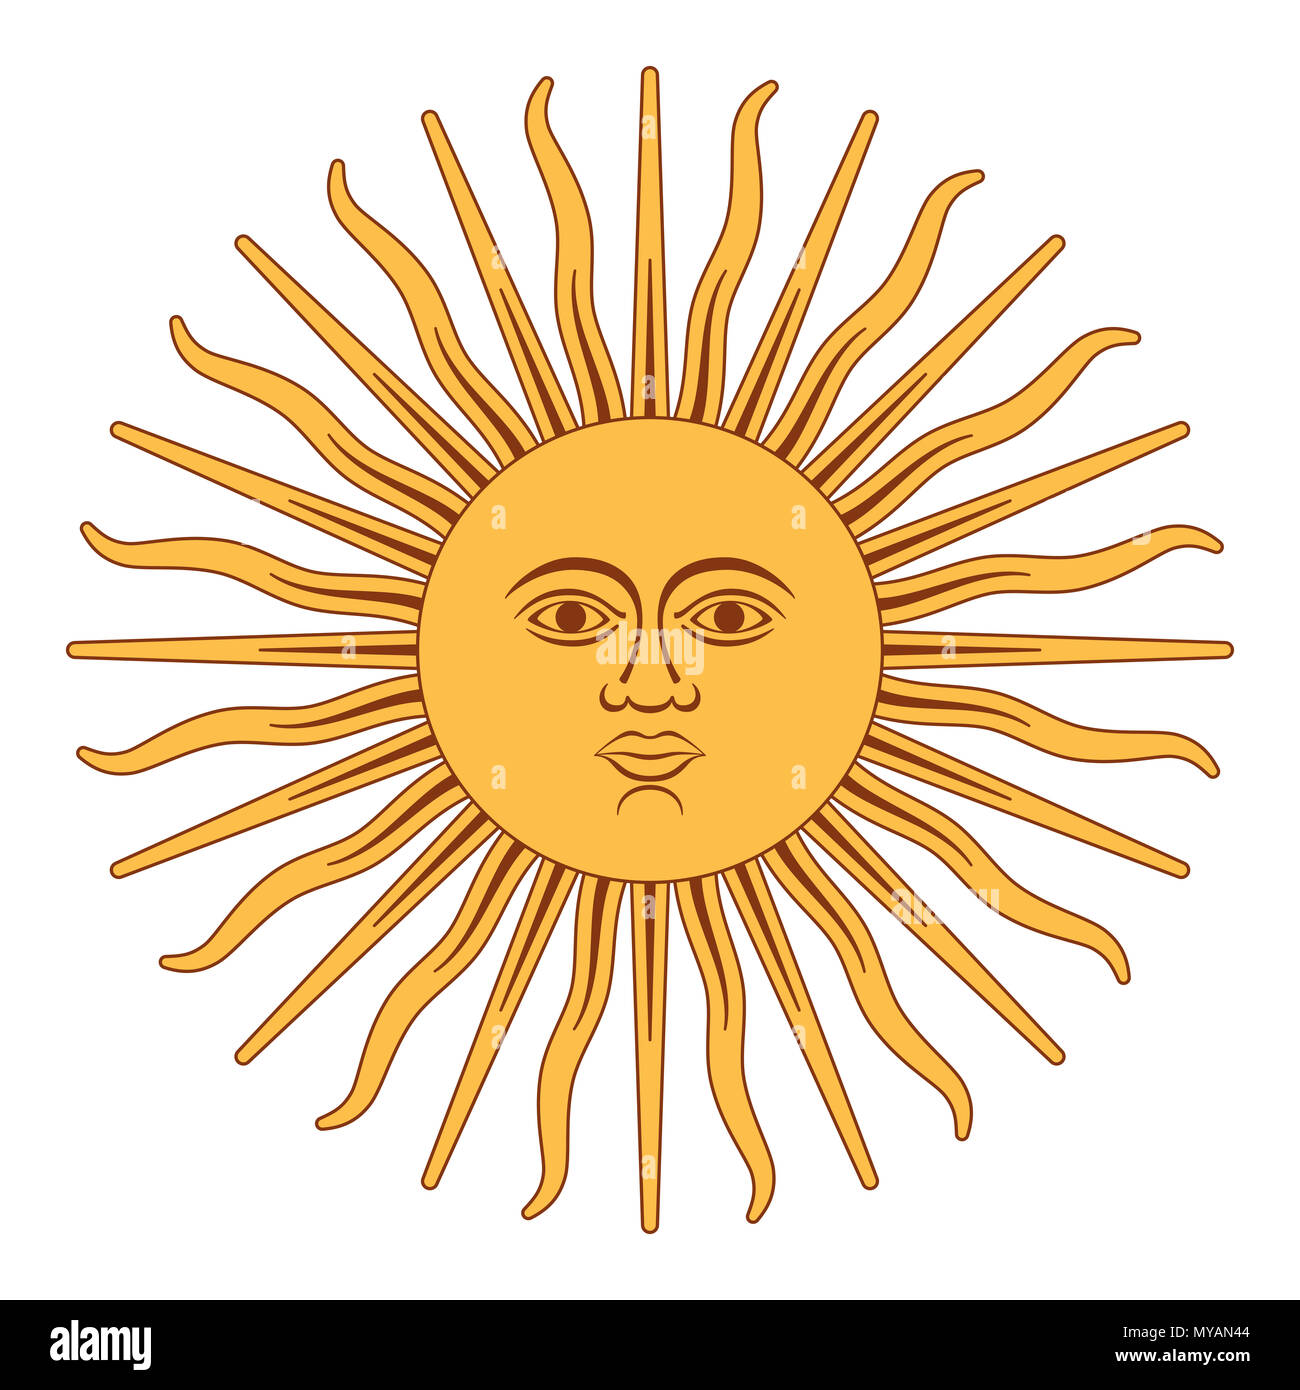 Sole di maggio, spagnolo Sol de Mayo, un emblema nazionale dell'Argentina sulla bandiera del paese. Illustrazione su bianco. Foto Stock